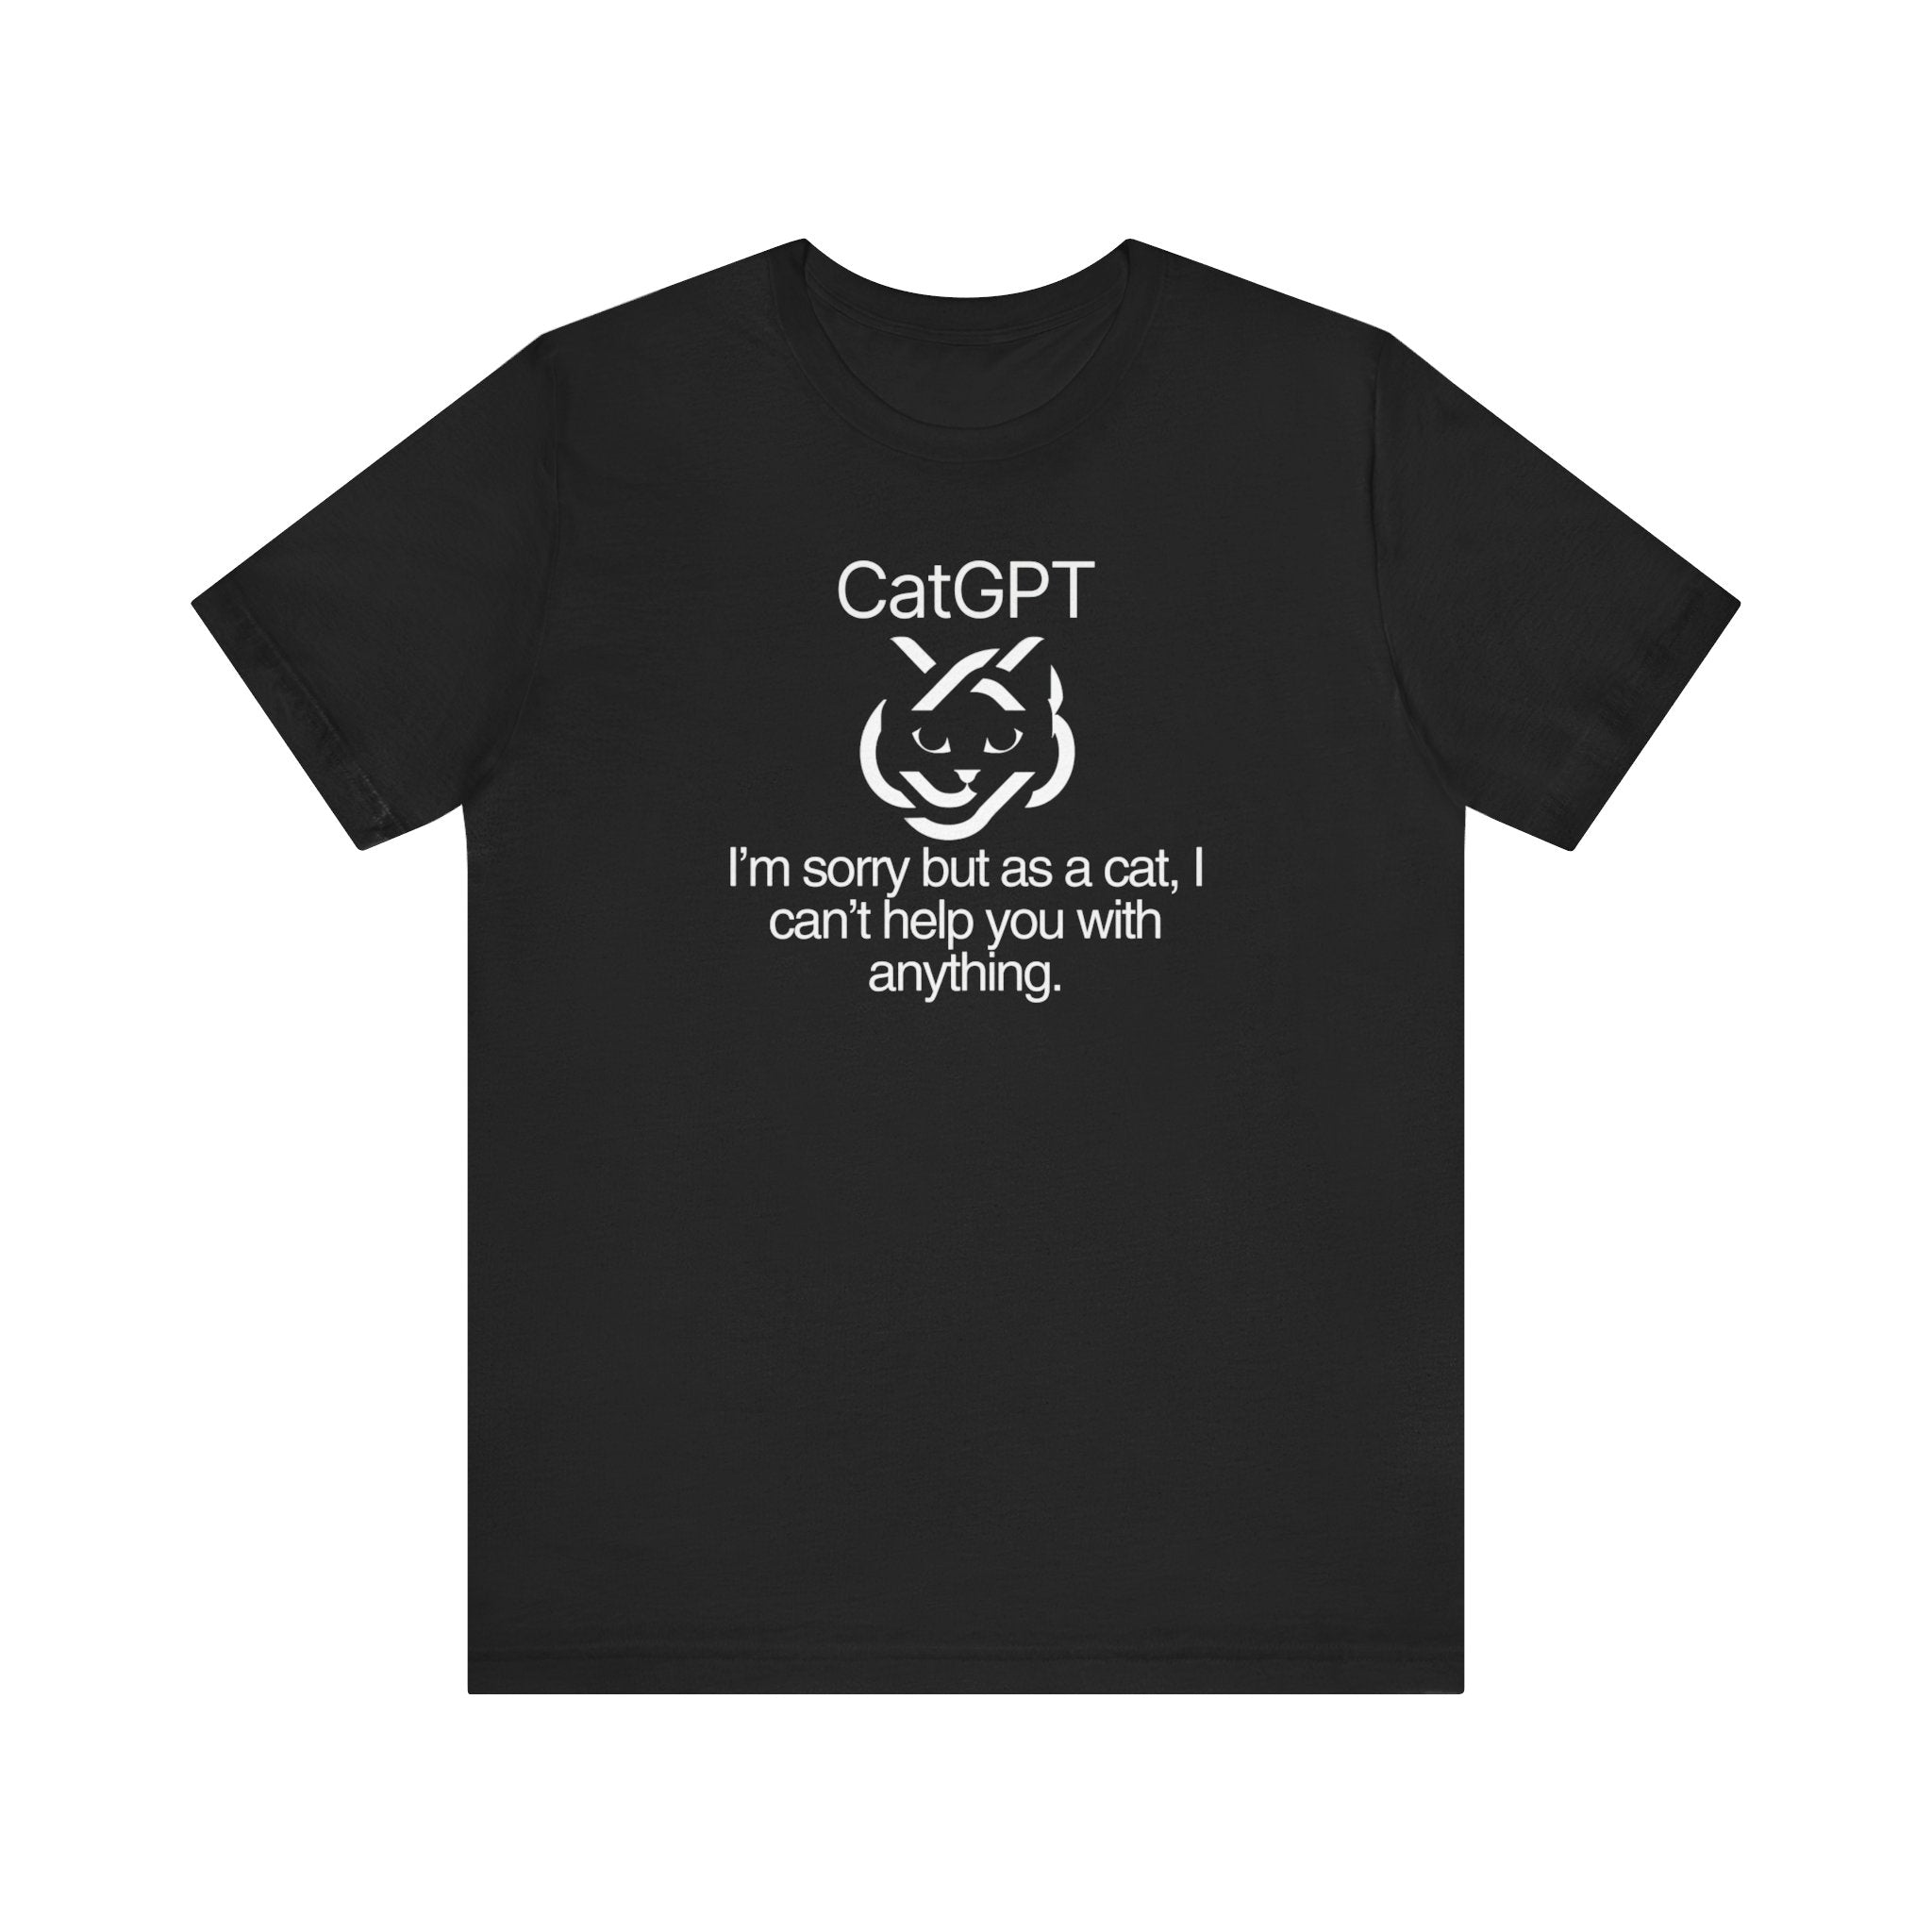 CatGPT Funny Cat T-Shirt